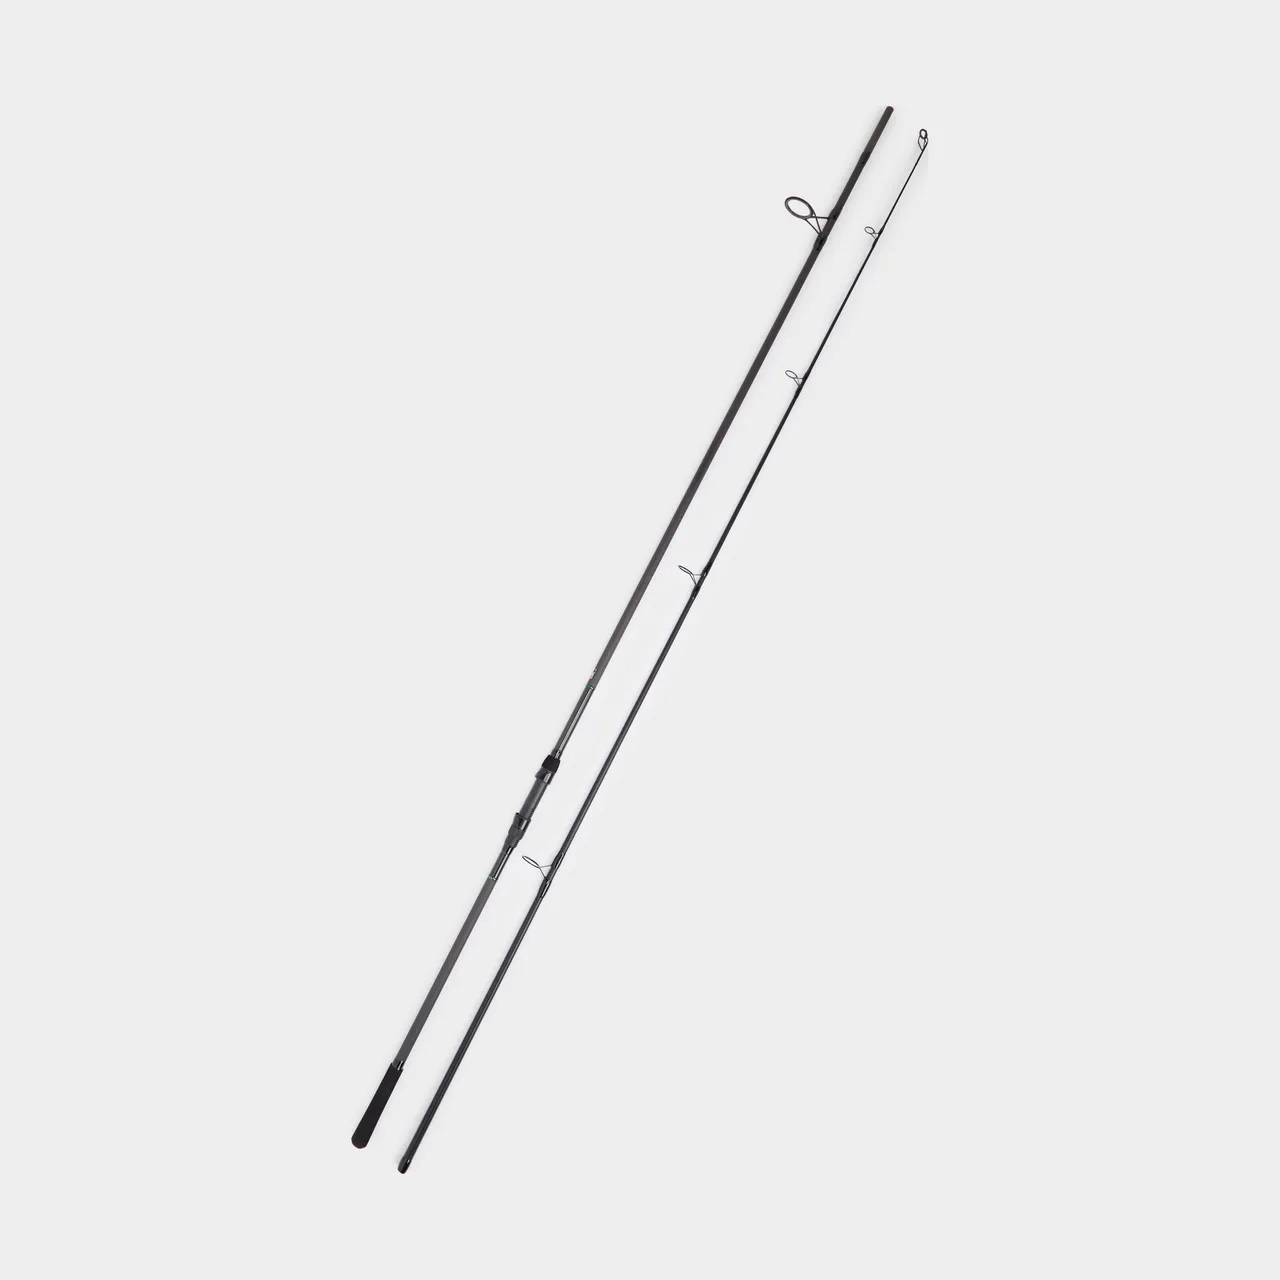 Kougar Carp Rod (12ft, 3.5lb), Black